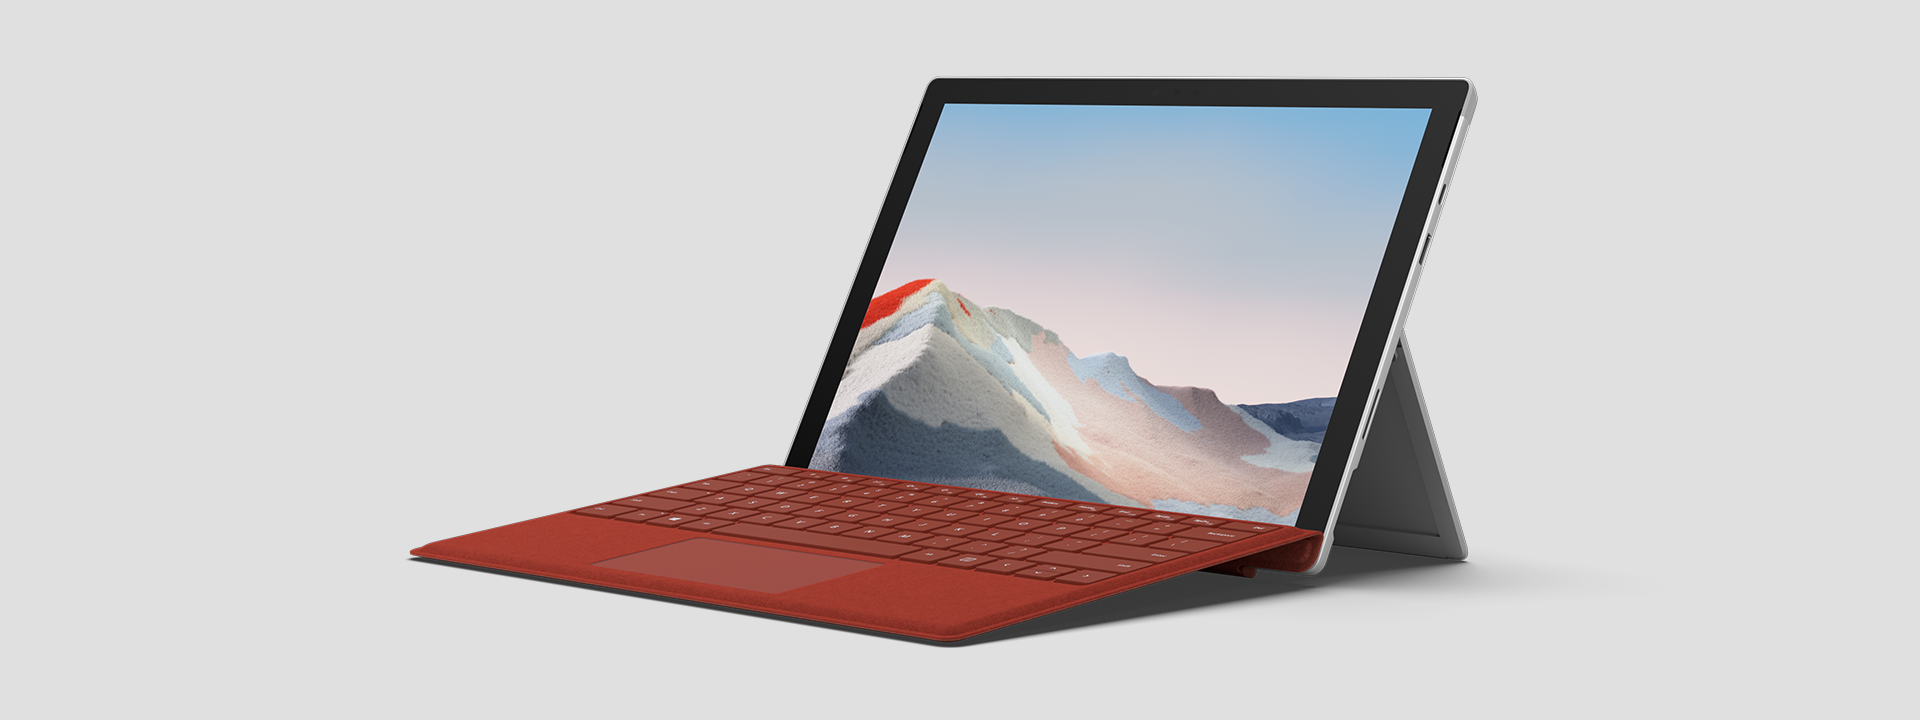 キックスタンドで自立し、画面とキーボードが見える法人向け Surface Pro 7+。